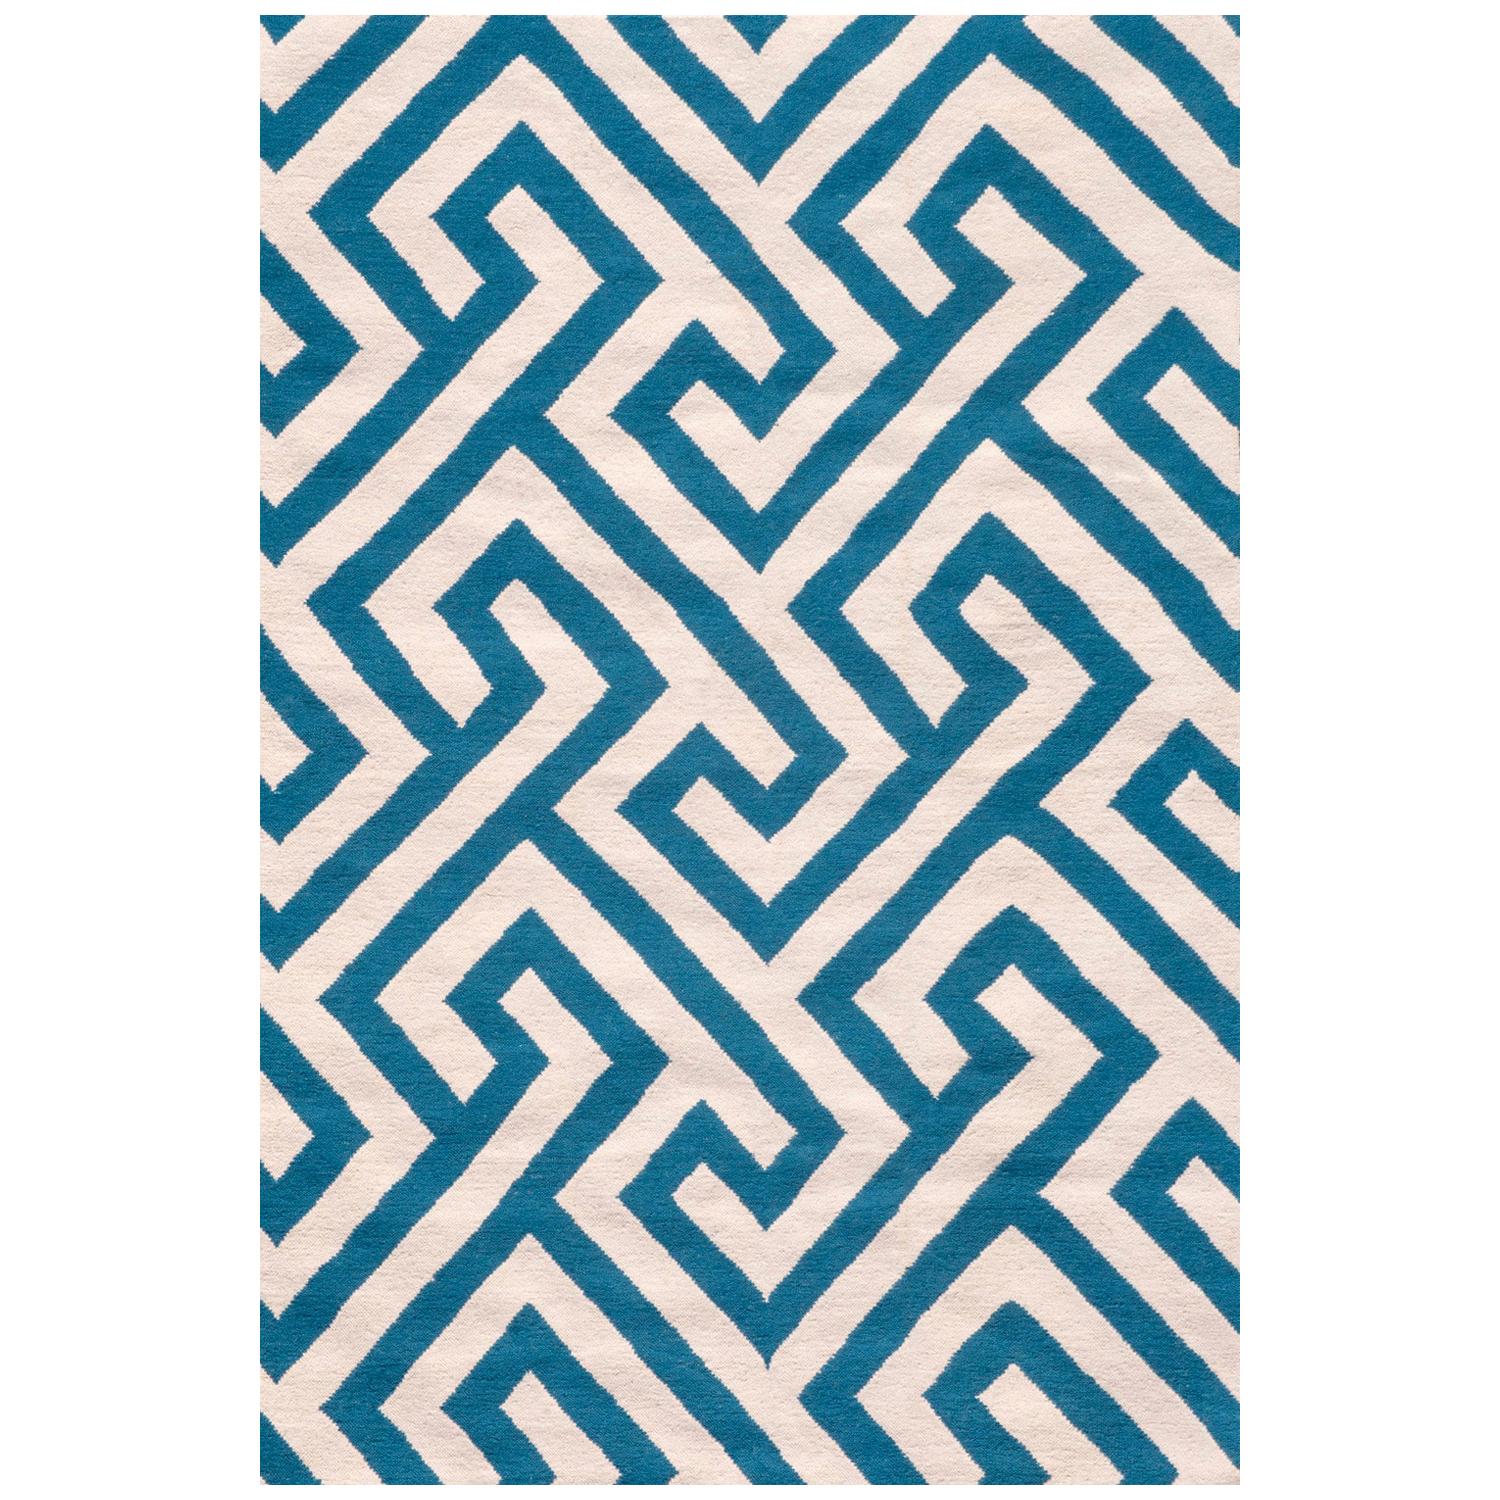 Tapis Kilim moderne en laine tissé à la main à plat, blanc et bleu, géométrique